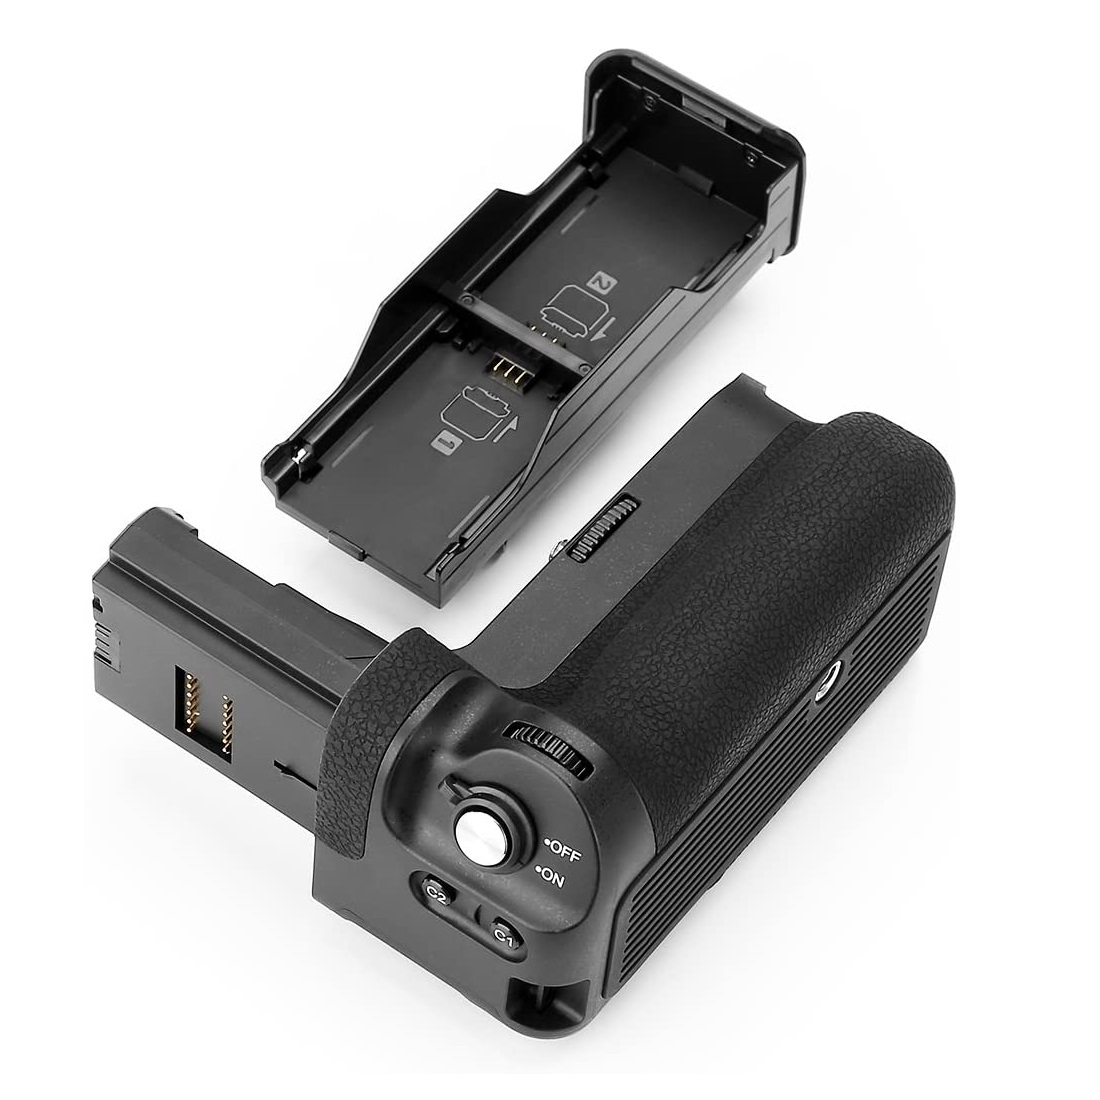  گریپ باتری دوربین مایک مدل Pro مناسب برای دوربین سونی A7R III به همراه ریموت بی سیم